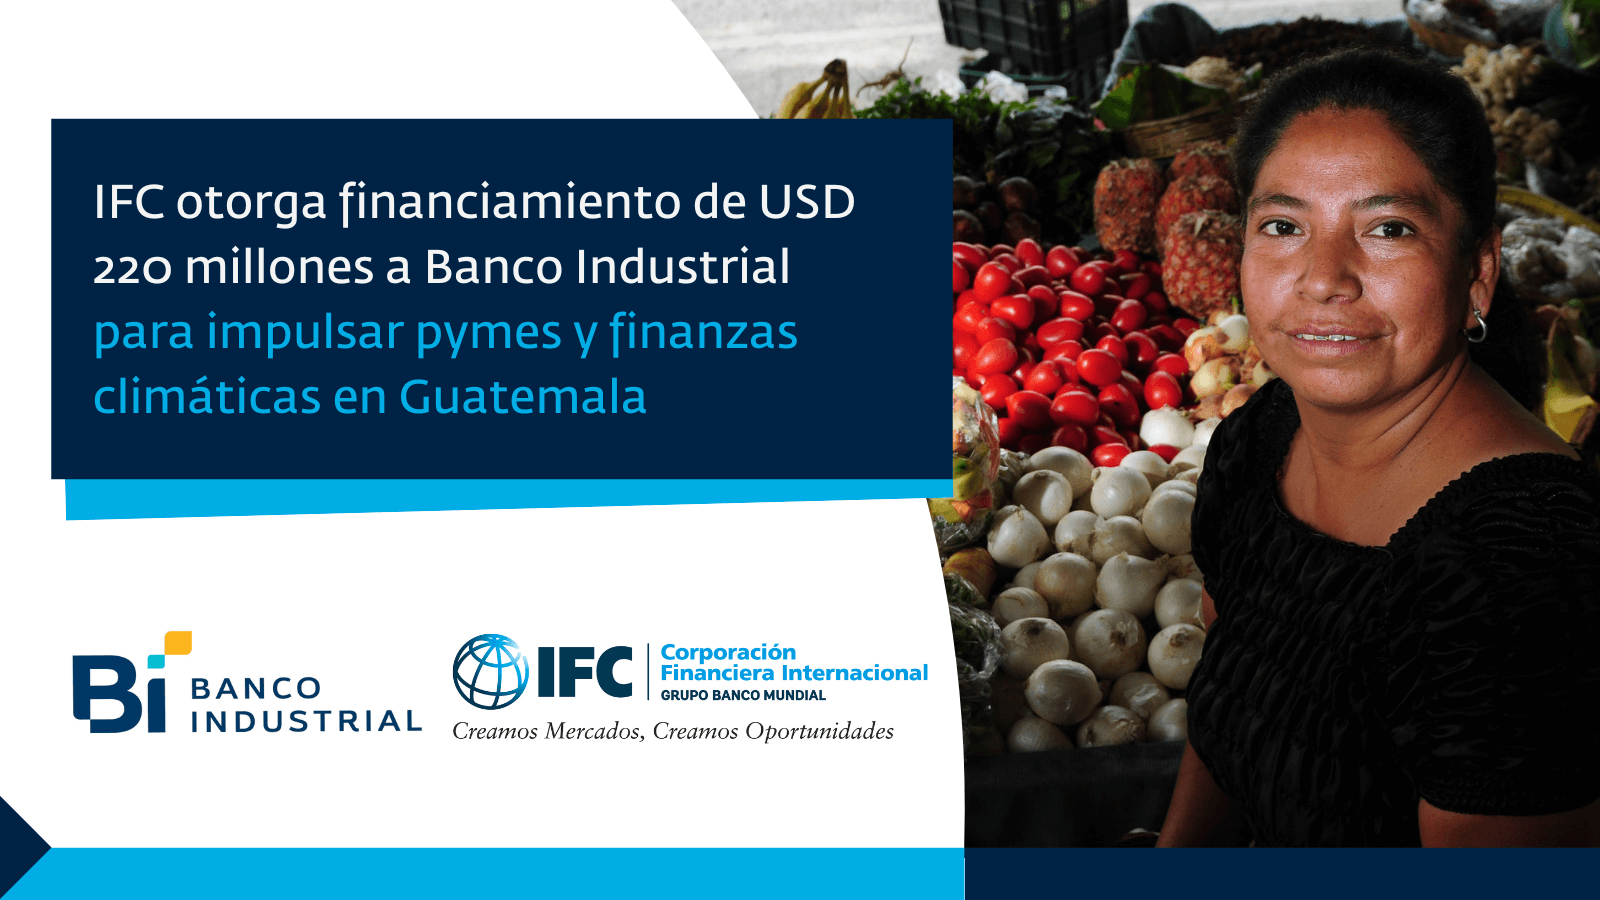 IFC otorga financiamiento a Banco Industrial para impulsar finanzas climáticas y pymes en Guatemala